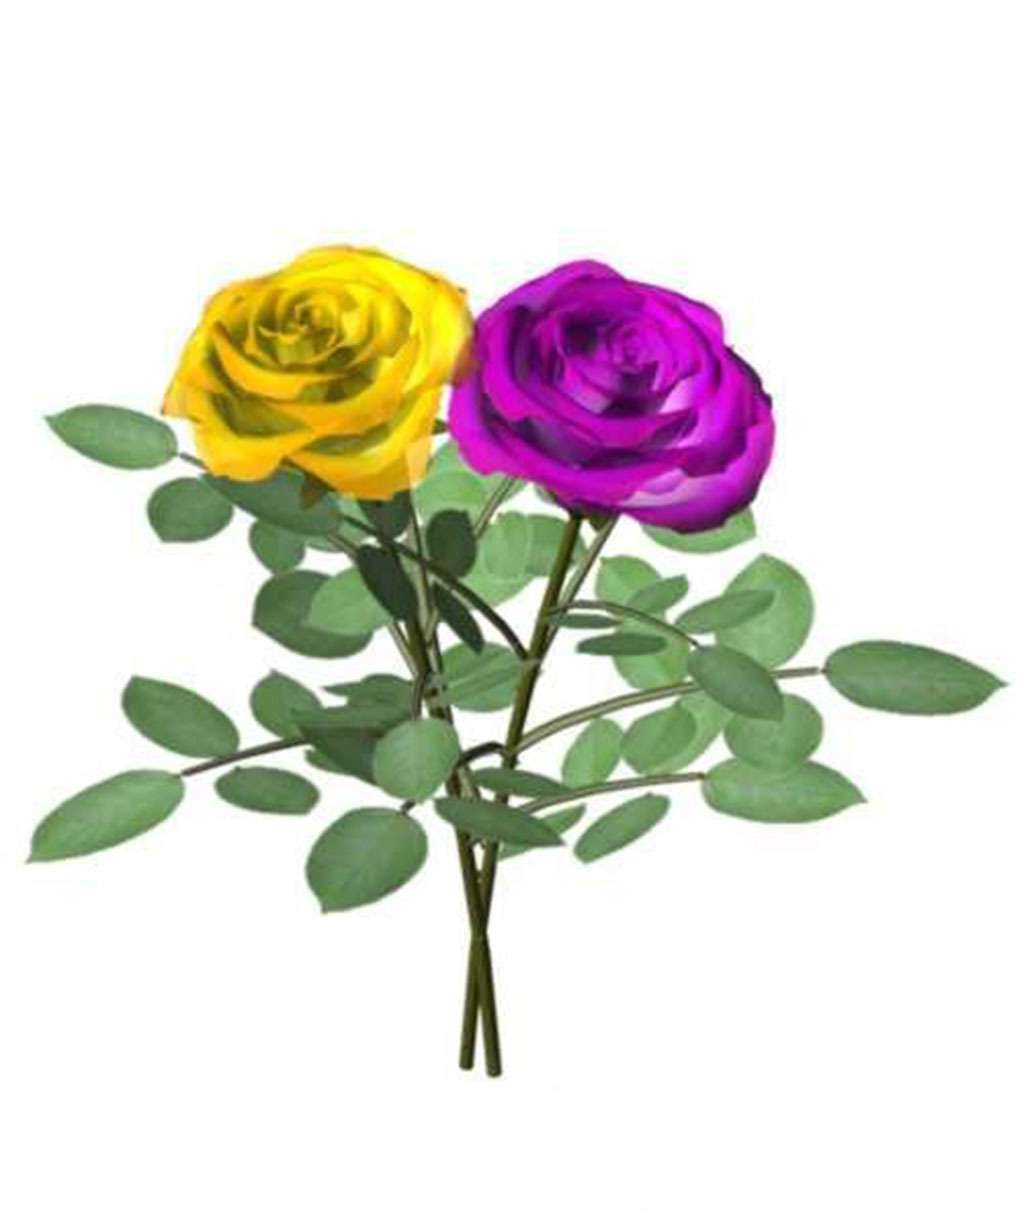 两朵小玫瑰花3d模型模板下载(图片编号:13630